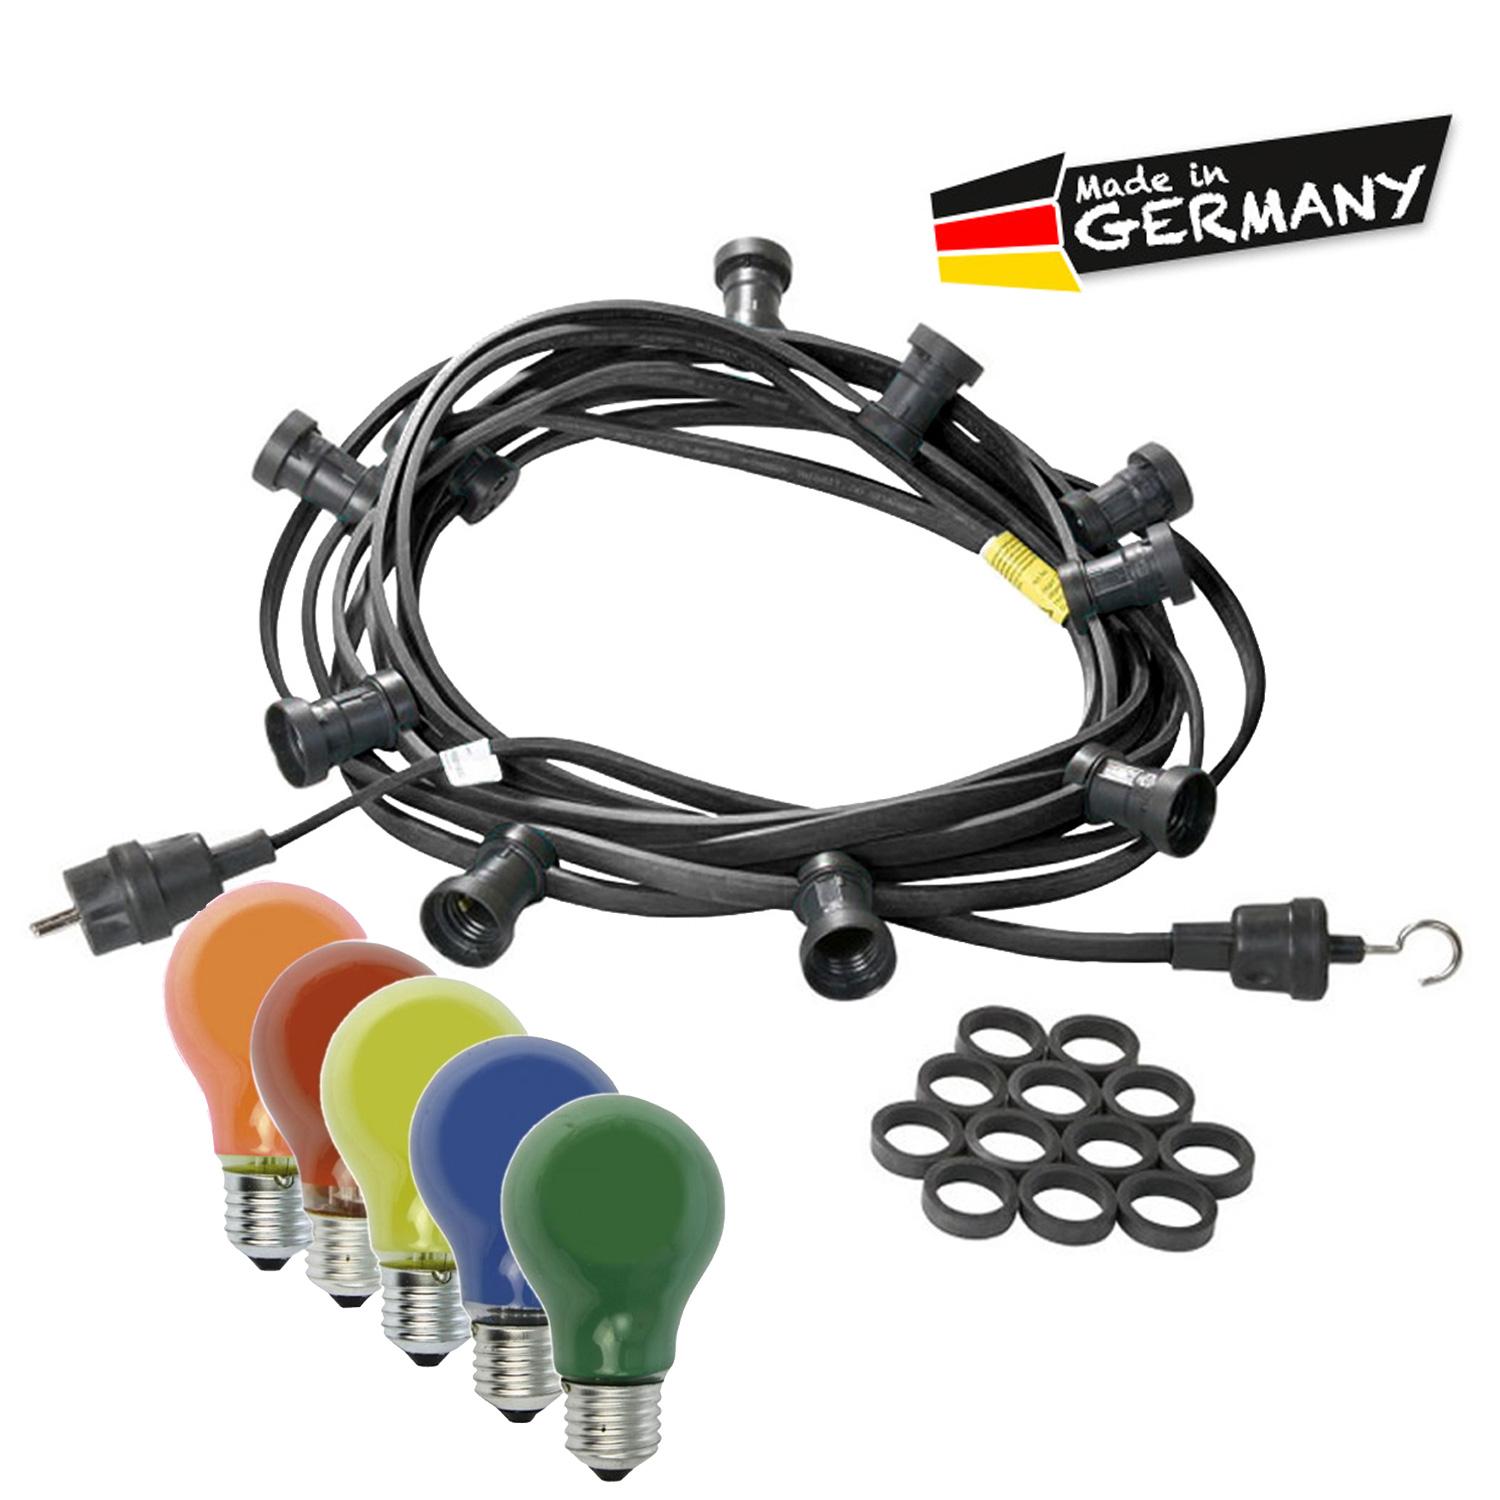 Illu-/Partylichterkette 10m - Außenlichterkette schwarz - Made in Germany - 30 bunte 25W Glühlampen